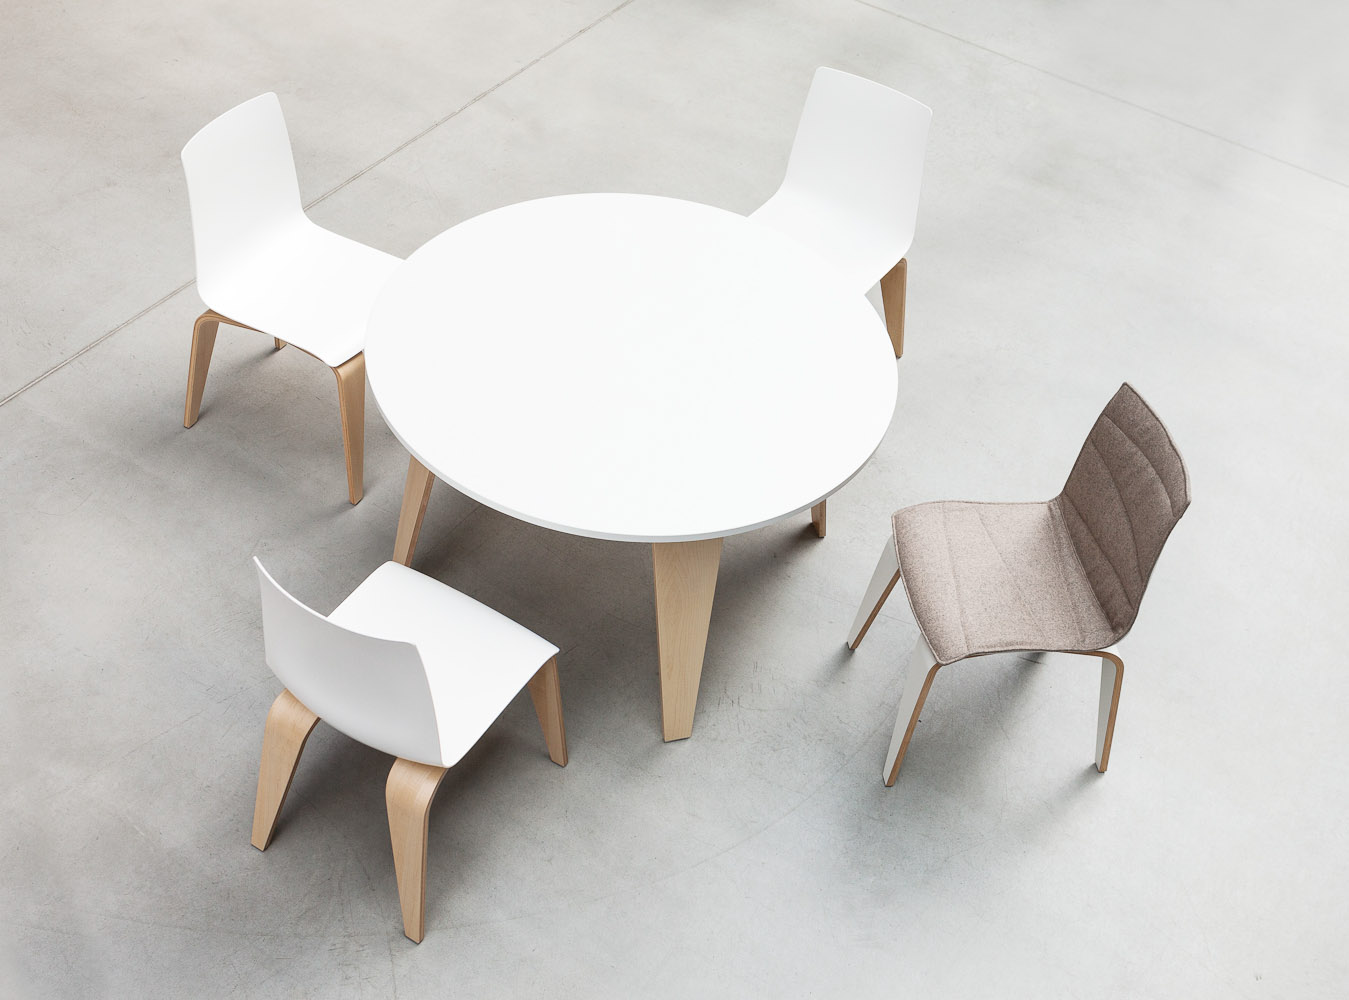 Krzesło PIGI jest połączeniem naturalności giętego drewna, z którego wykonane są nogi z błyszczącym, lśniącym siedziskiem i oparciem z tworzywa sztucznego. W połączeniu ze stołem tworzy idealne rozwiązanie dla przestrzeni kawiarni, cafeterii i miejsc spotkań.